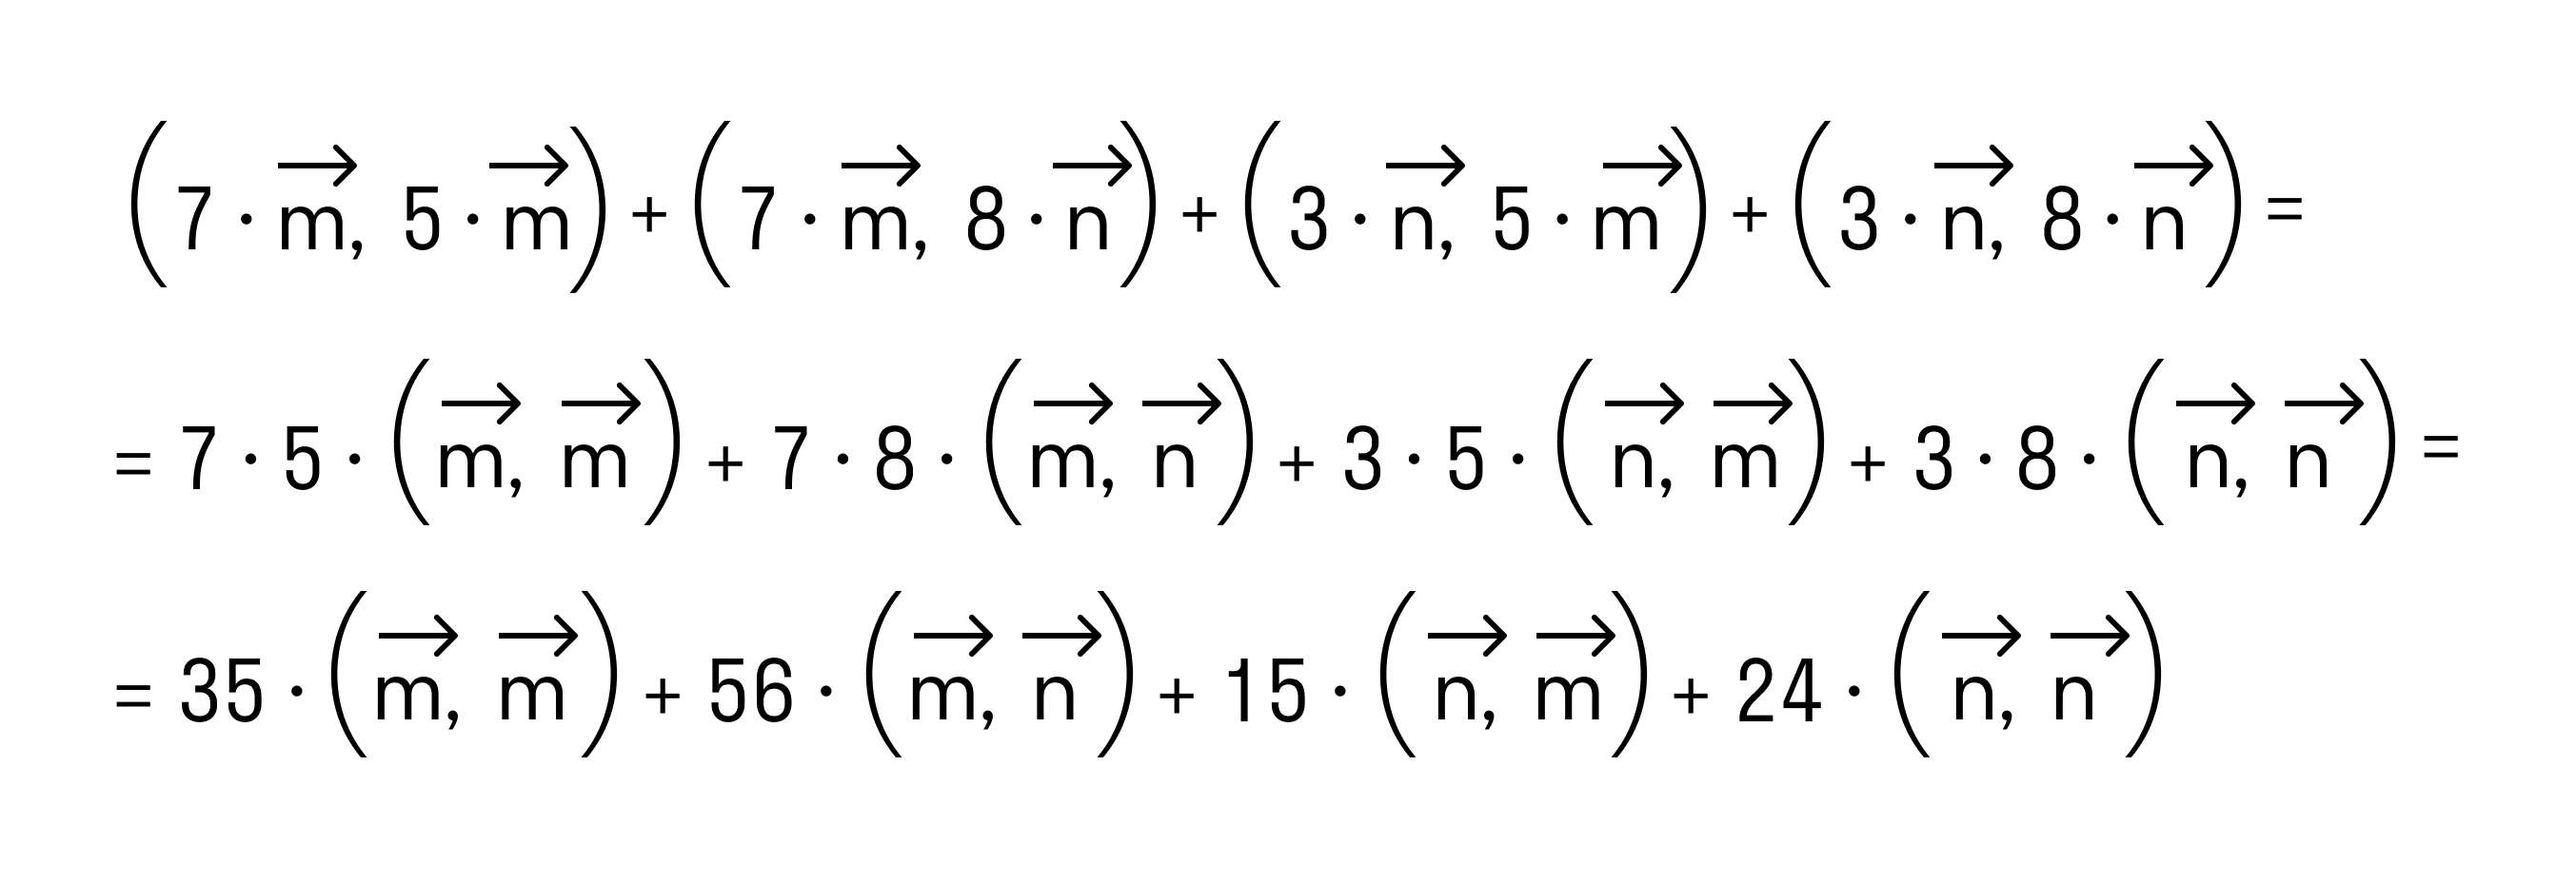 решение примера 3 рис 3